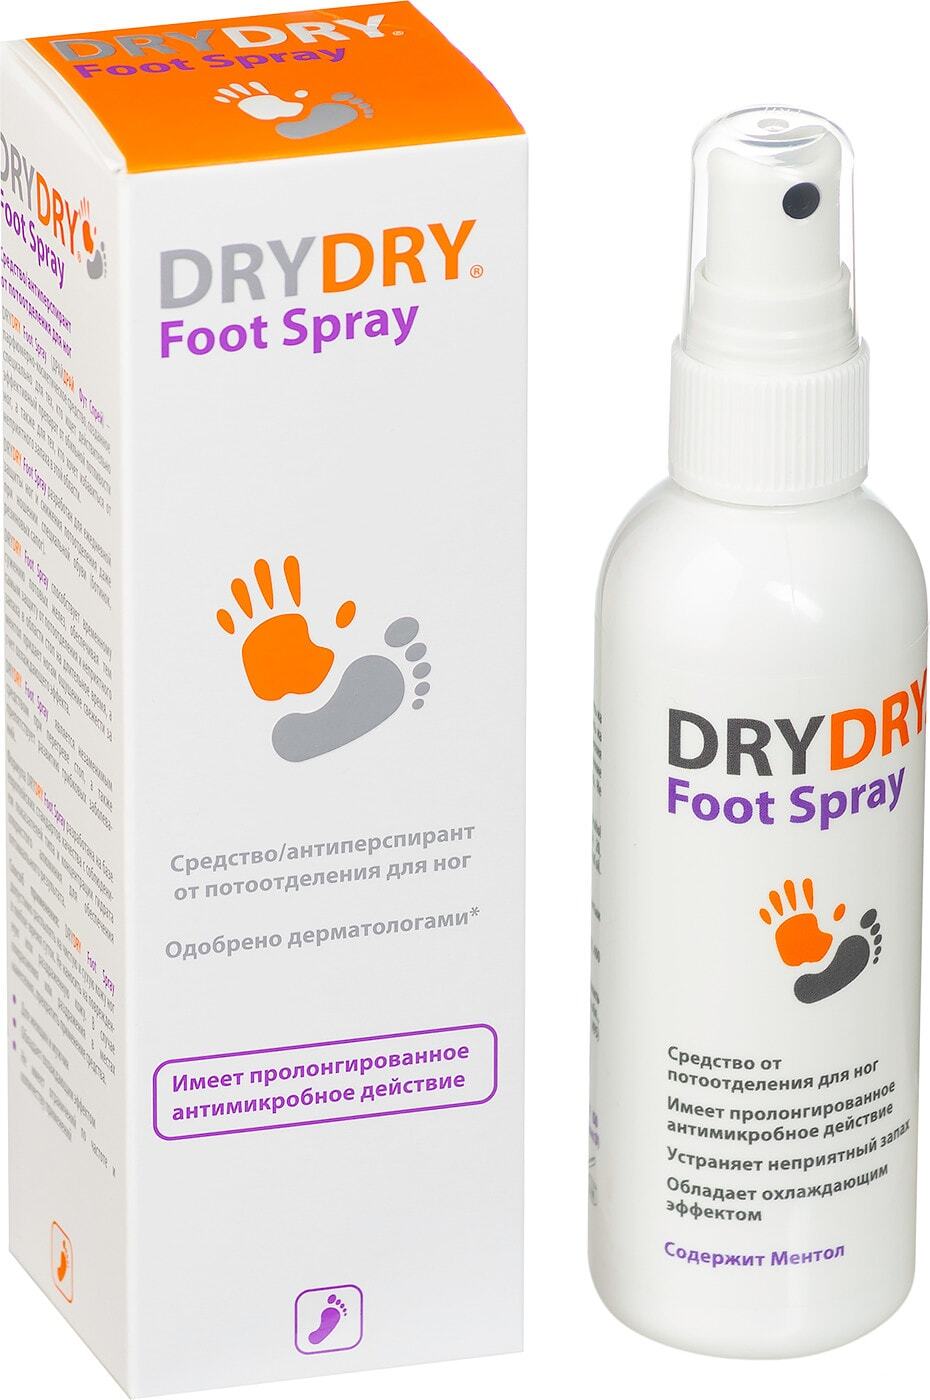 Спрей для ног foot. Dry Dry foot Spray. Средство от потоотделения для ног Dry Dry foot Spray, 100 мл. Драй-драй дезодорант спрей. Dry Dry дезодорант 100.